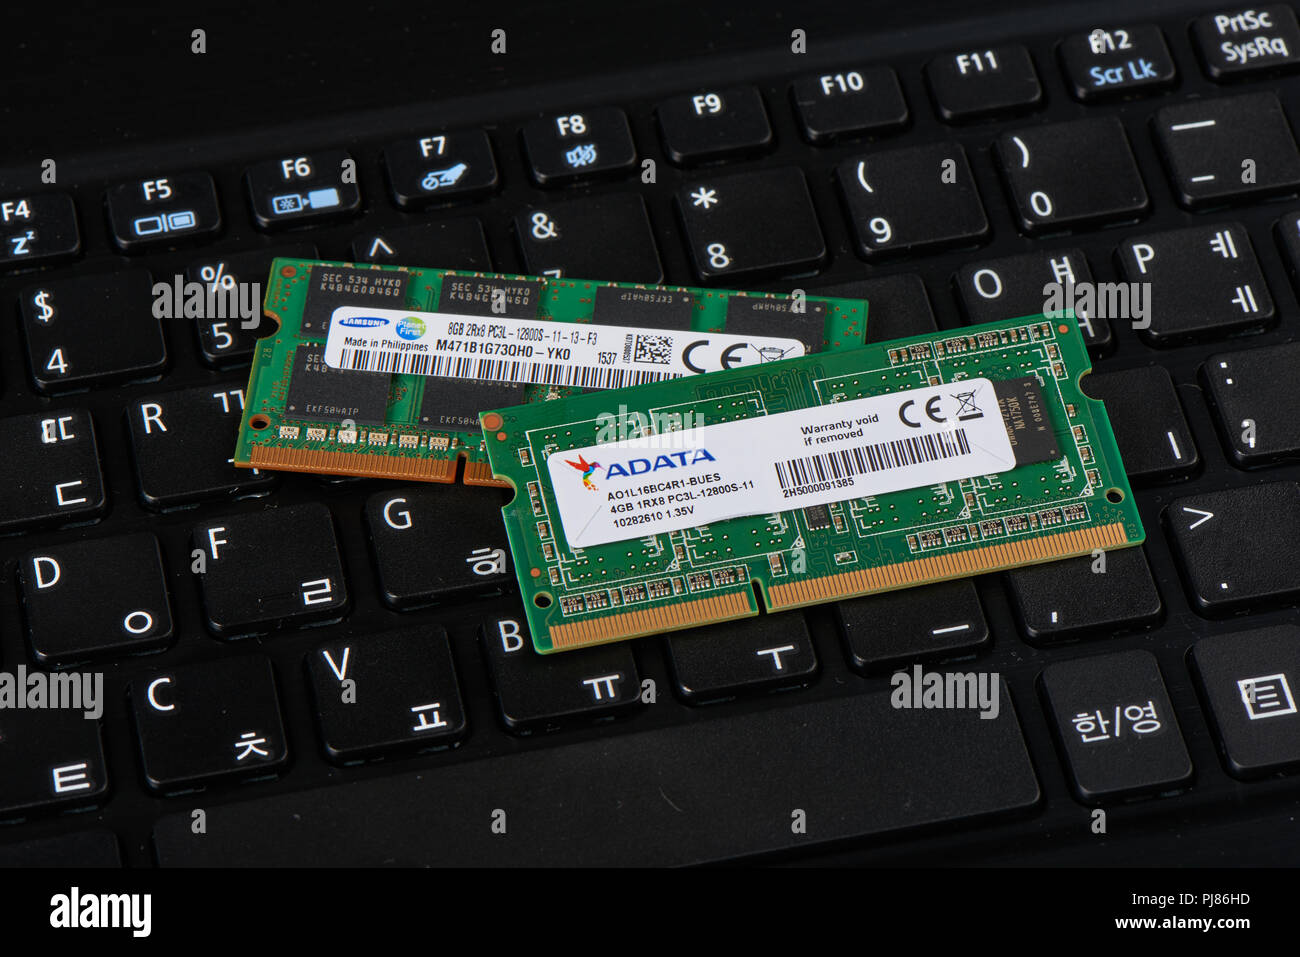 Gimpo-si, Korea - Juli 10, 2018: DDR3L-RAM auf einem koreanischen Tastatur. DDR3L bedeutet niedrige Spannung Double Data Rate 3 SDRAM-Typ. Es ist in der verwendeten Geräte, Stockfoto